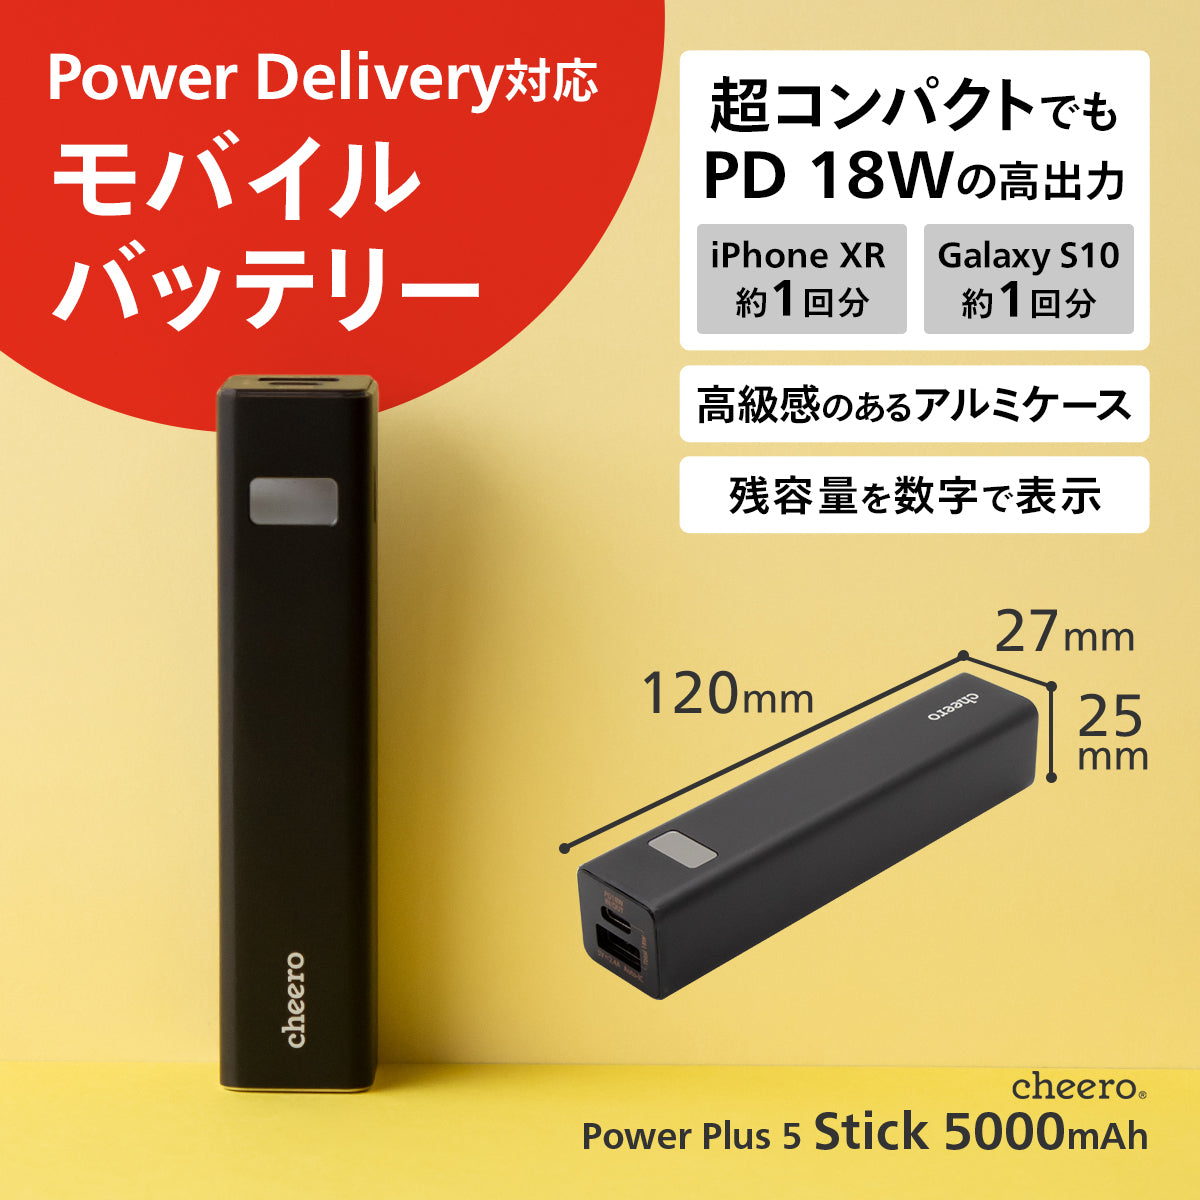 【販売終了】cheero Power Plus 5 Stick 5000mAh with Power Delivery 18W